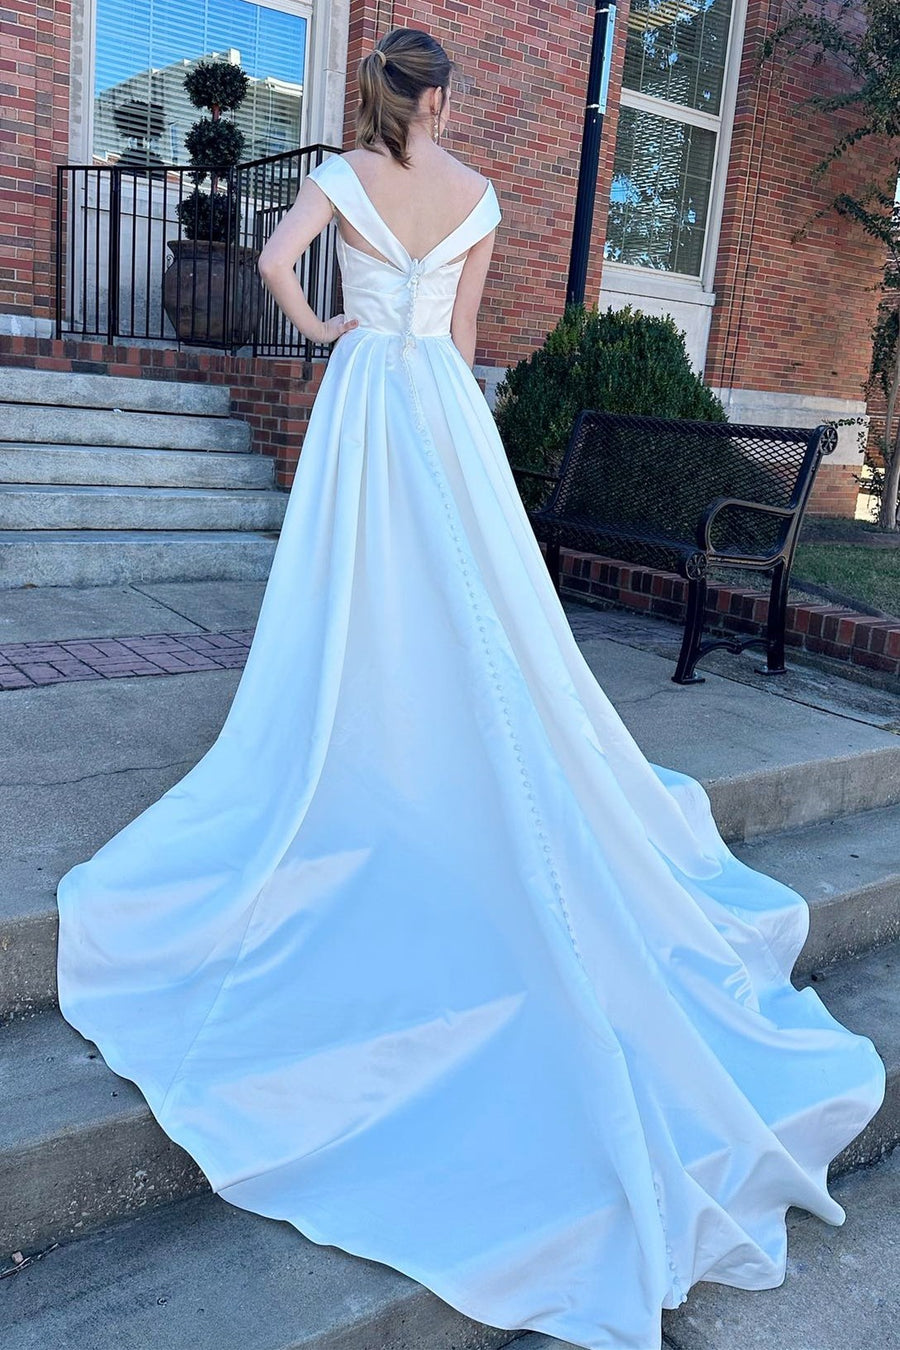 White Portrait High-Waist A-Line Long Wedding Dress